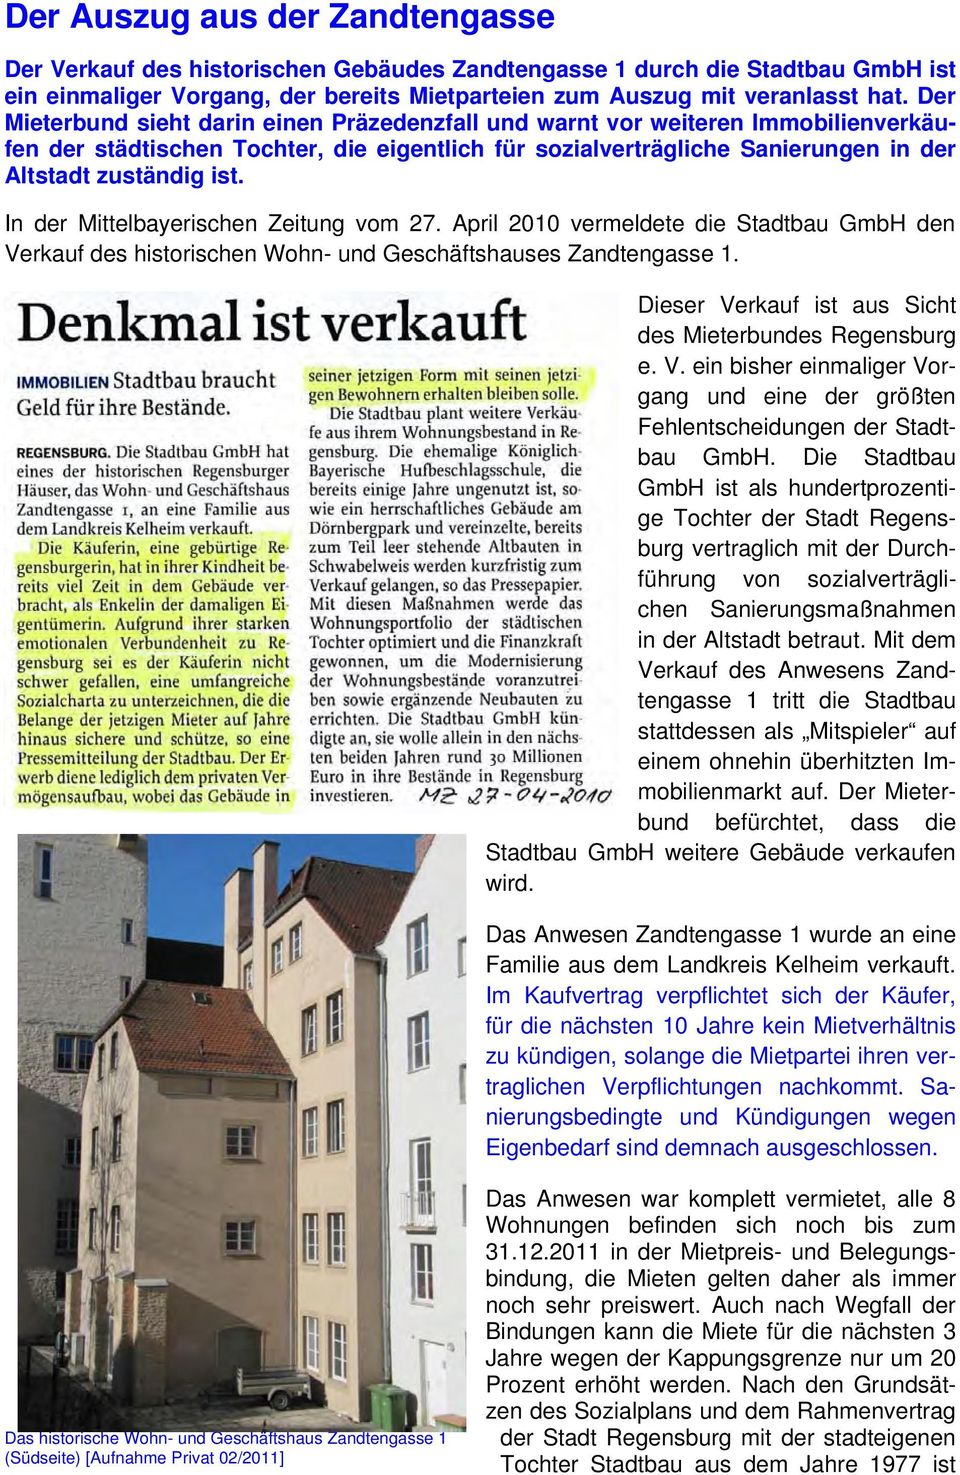 In der Mittelbayerischen Zeitung vom 27. April 2010 vermeldete die Stadtbau GmbH den Verkauf des historischen Wohn- und Geschäftshauses Zandtengasse 1.